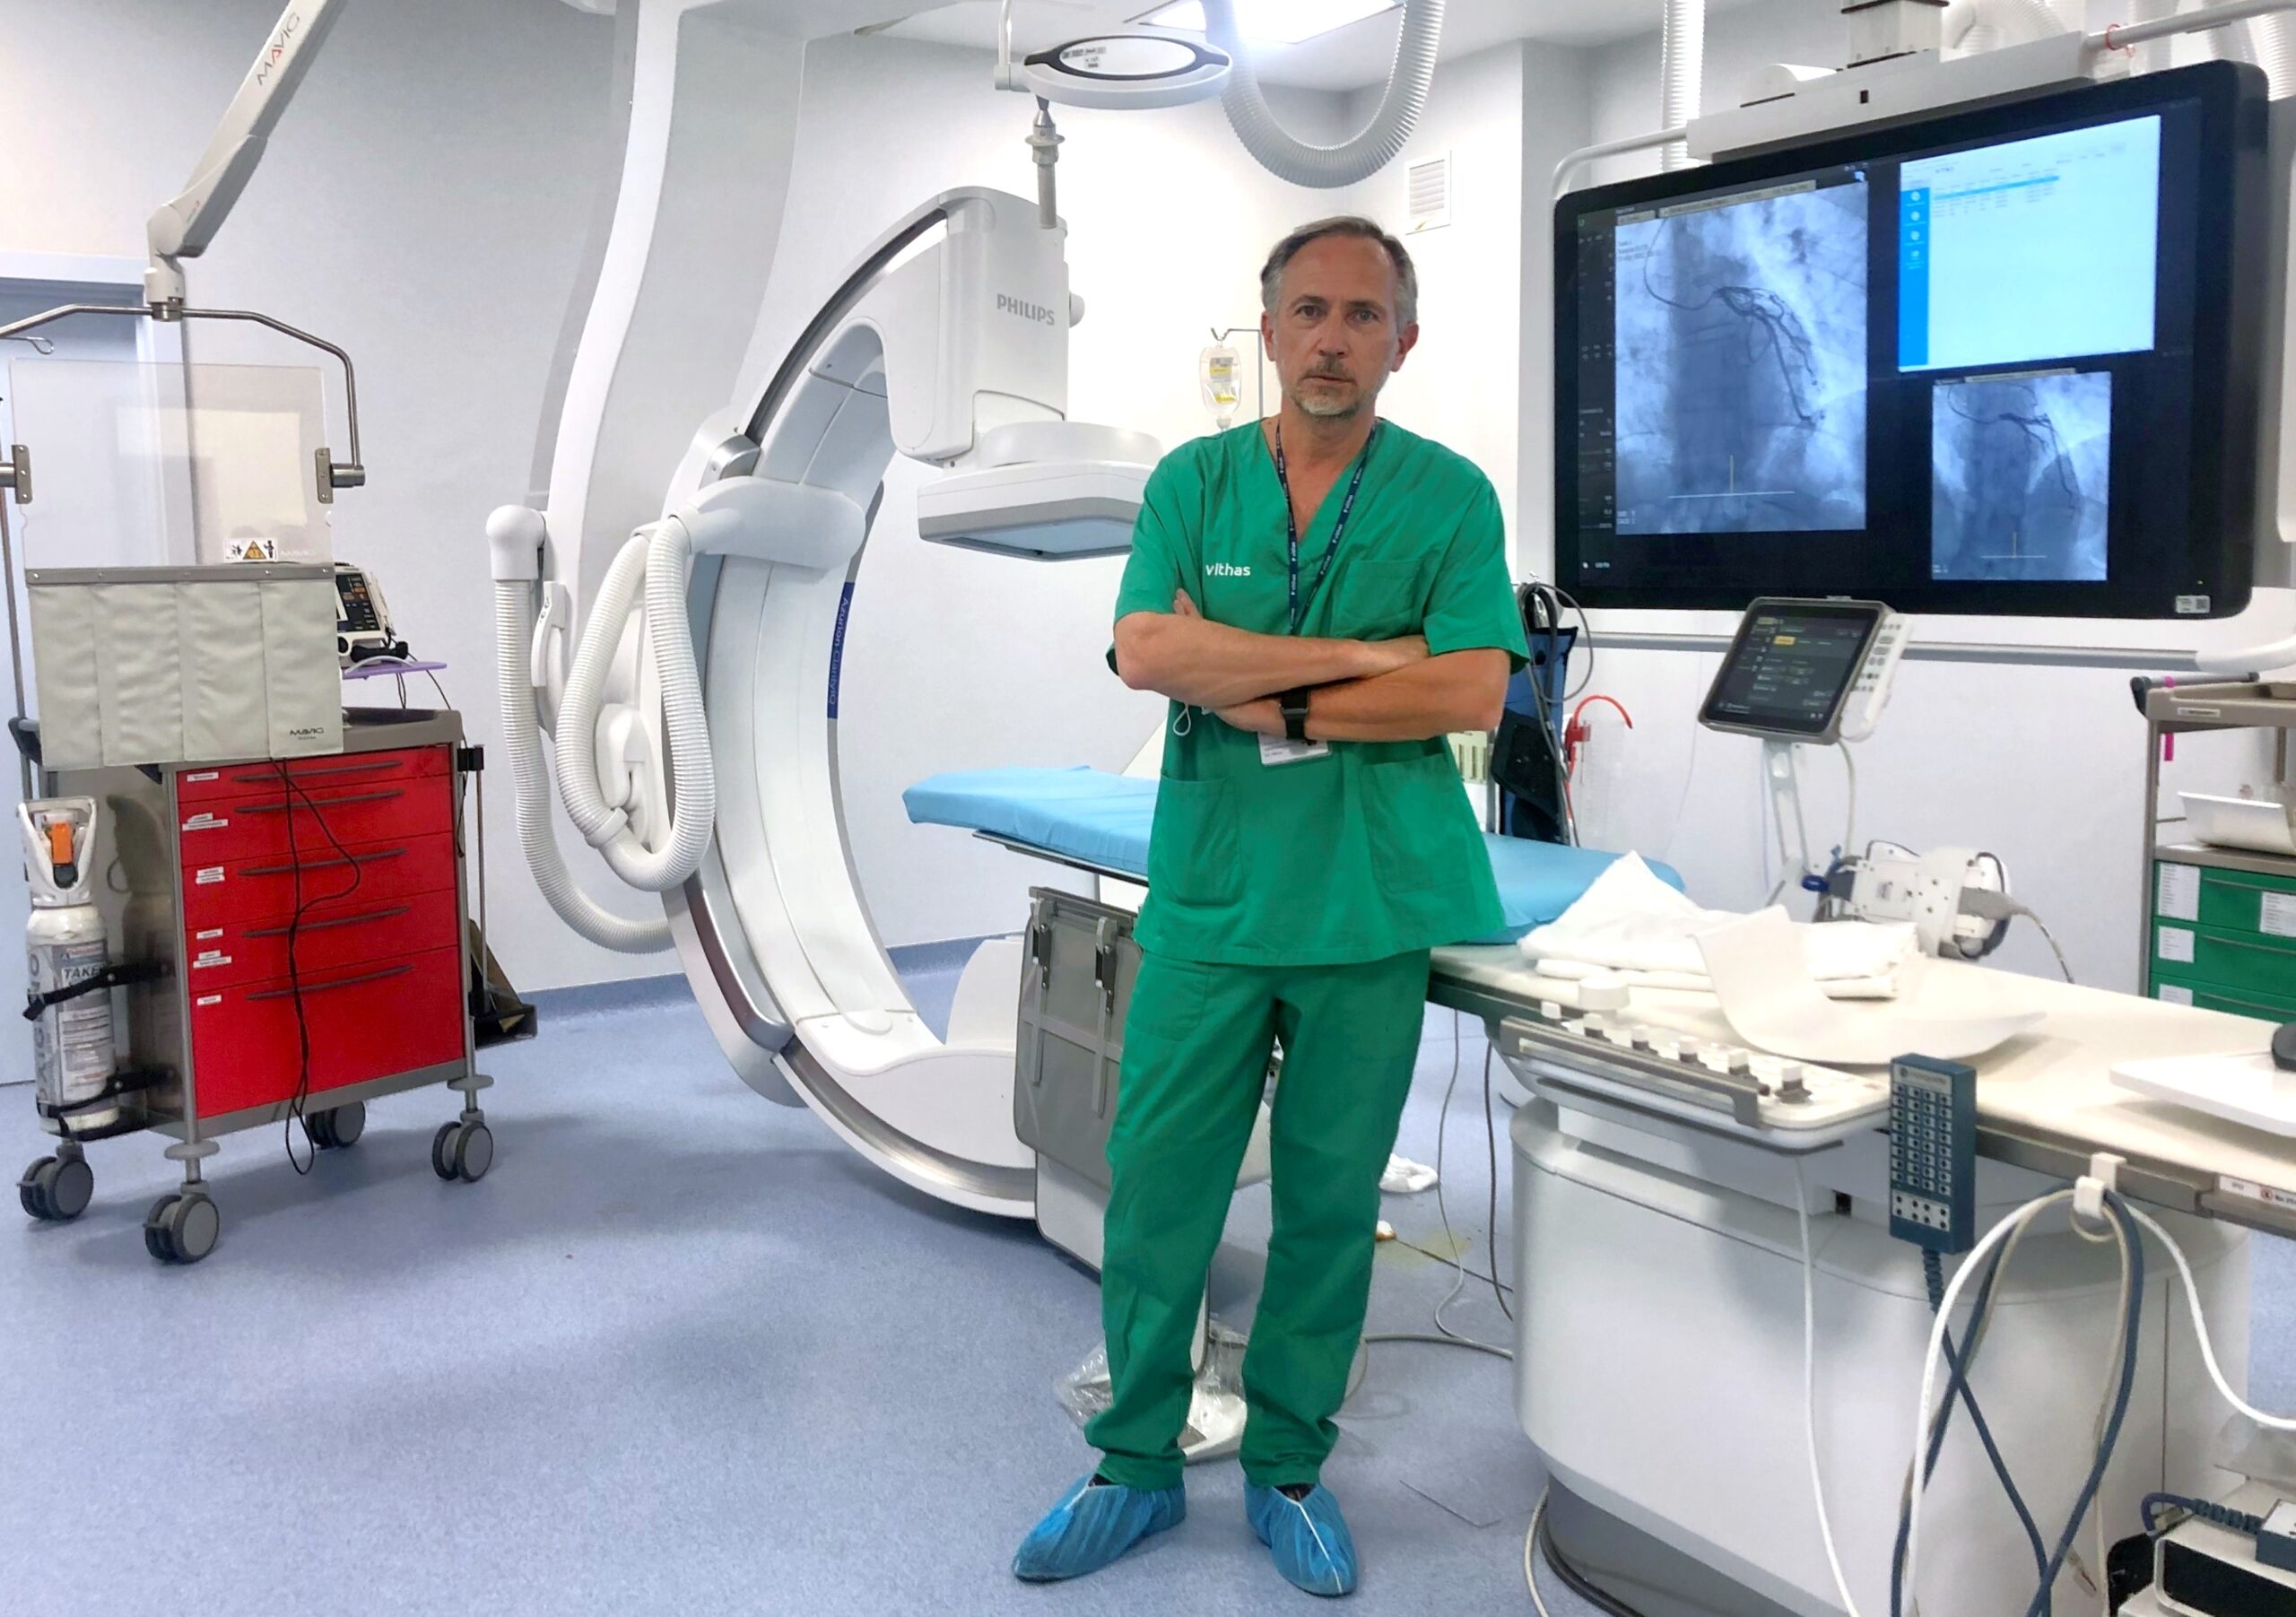 Máxima calidad, mínima radiación y rápido acceso a quirófanos y la UCI: Vithas Madrid Aravaca renueva su sala de hemodinámica